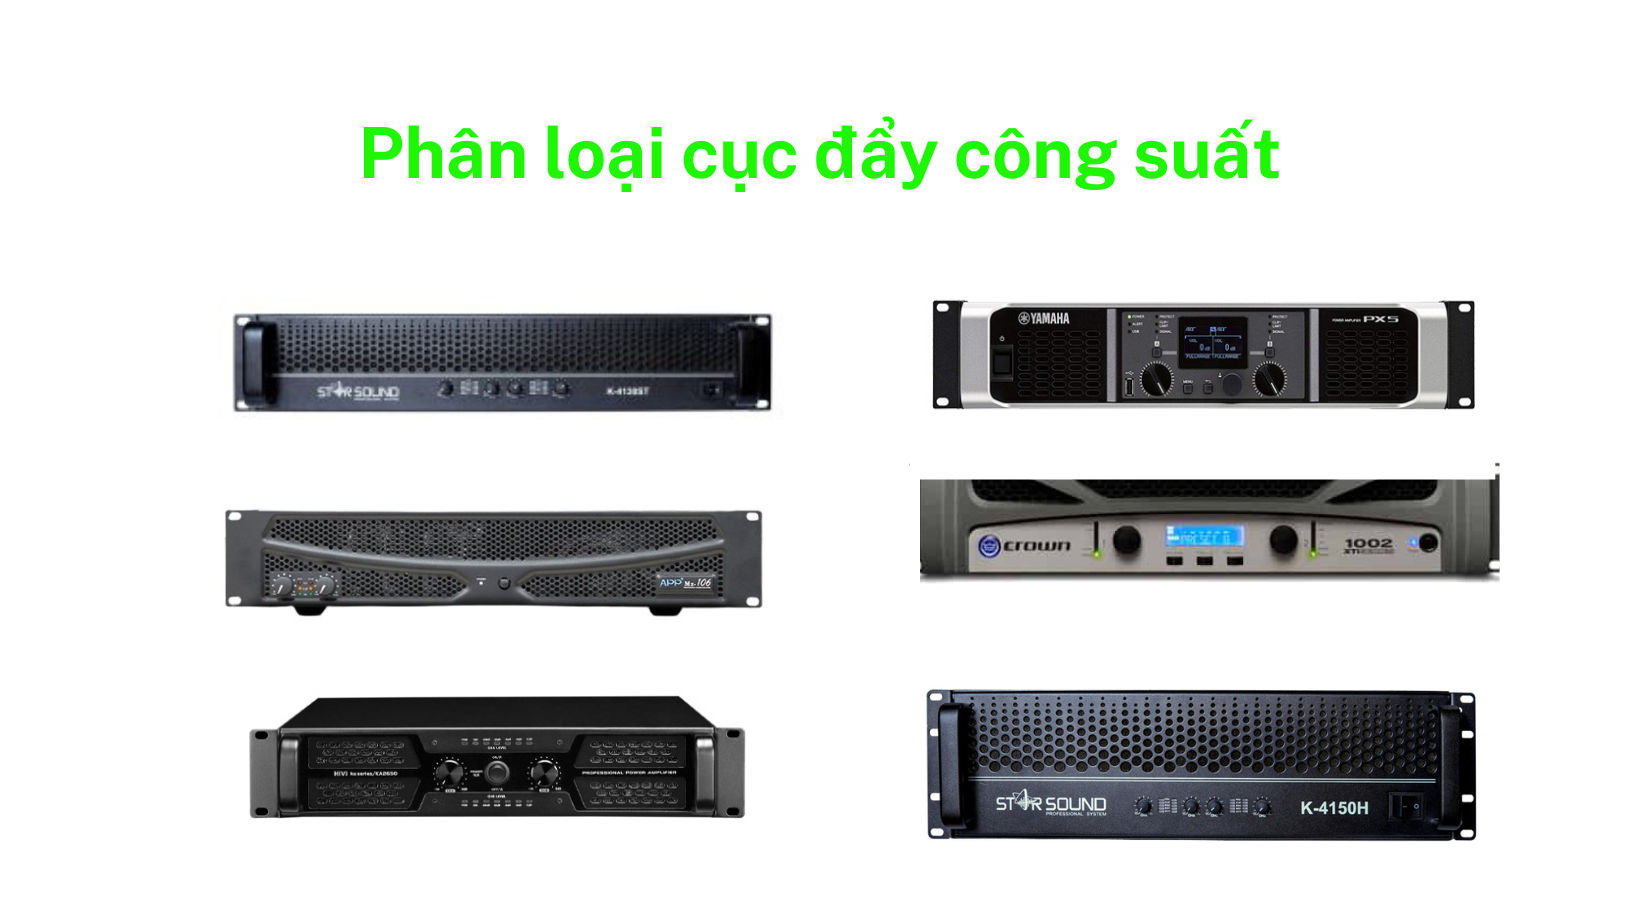  Phan-loai-cuc-day-cong-suat